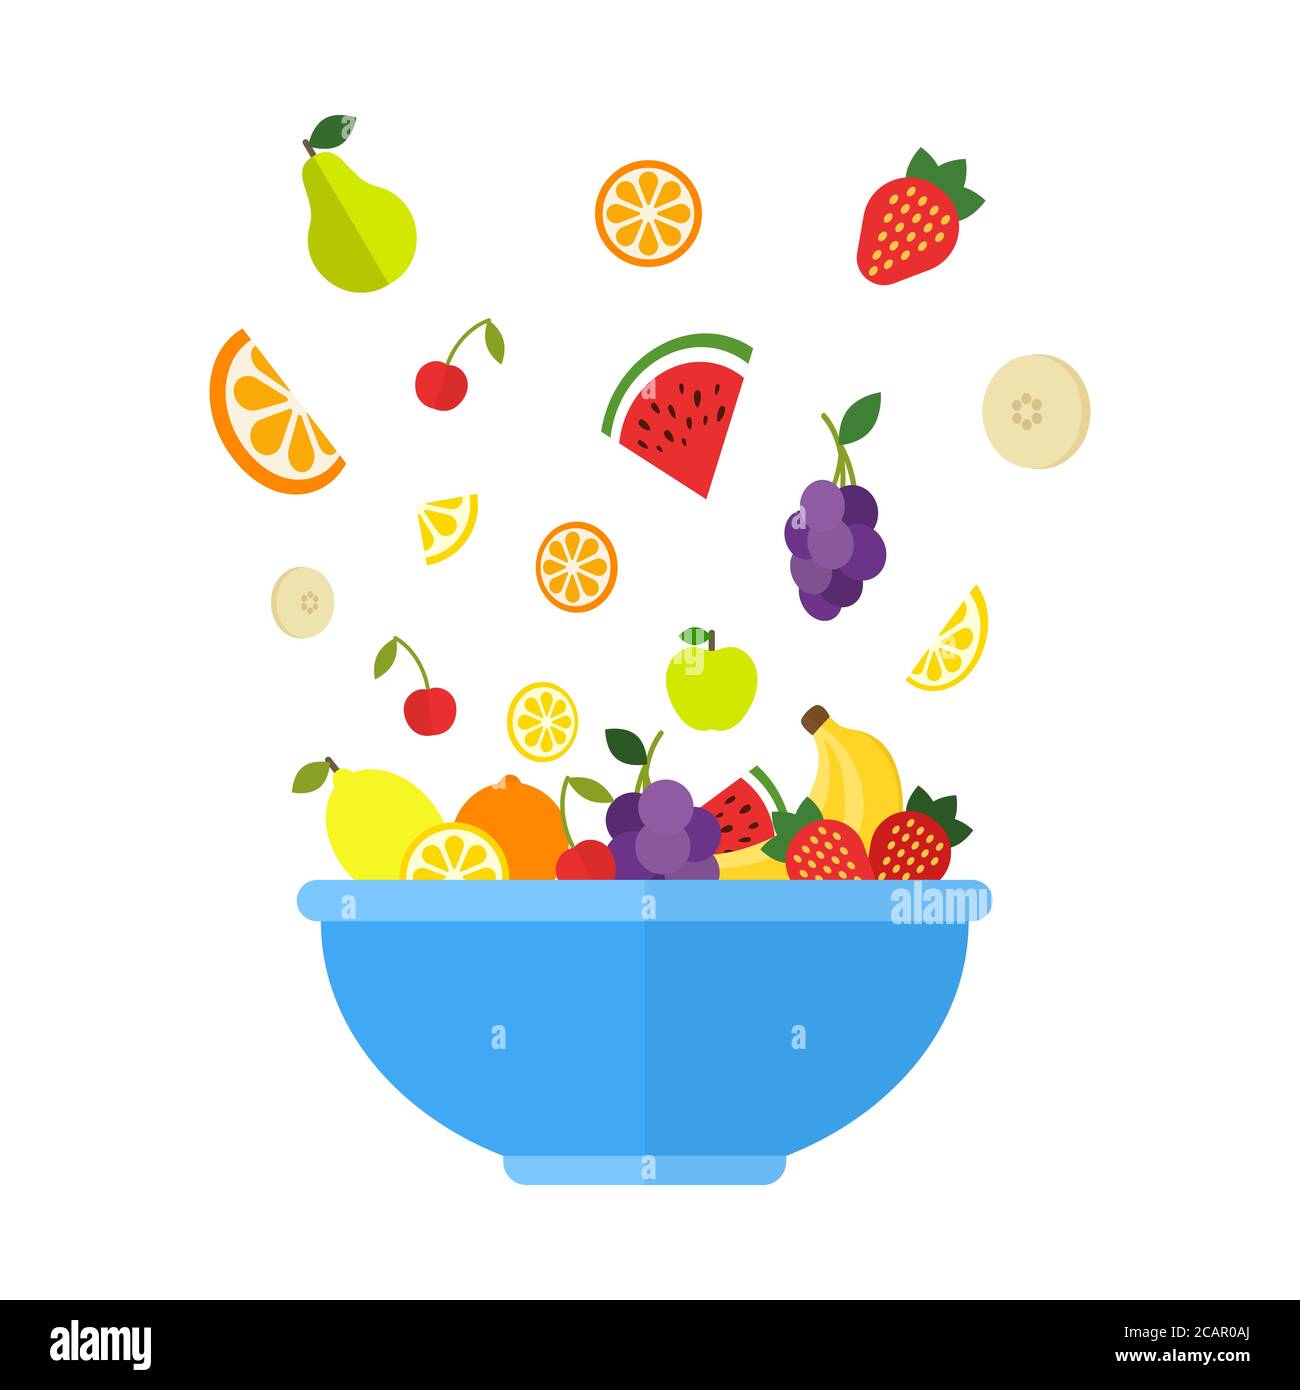 Früchte und Beeren fallen in große blaue Schale. Frischer Obstsalat isoliert auf weißem Hintergrund. Fruchtmix für ein gesundes Leben. Vegane Speisekarte. Vektorillust Stock Vektor